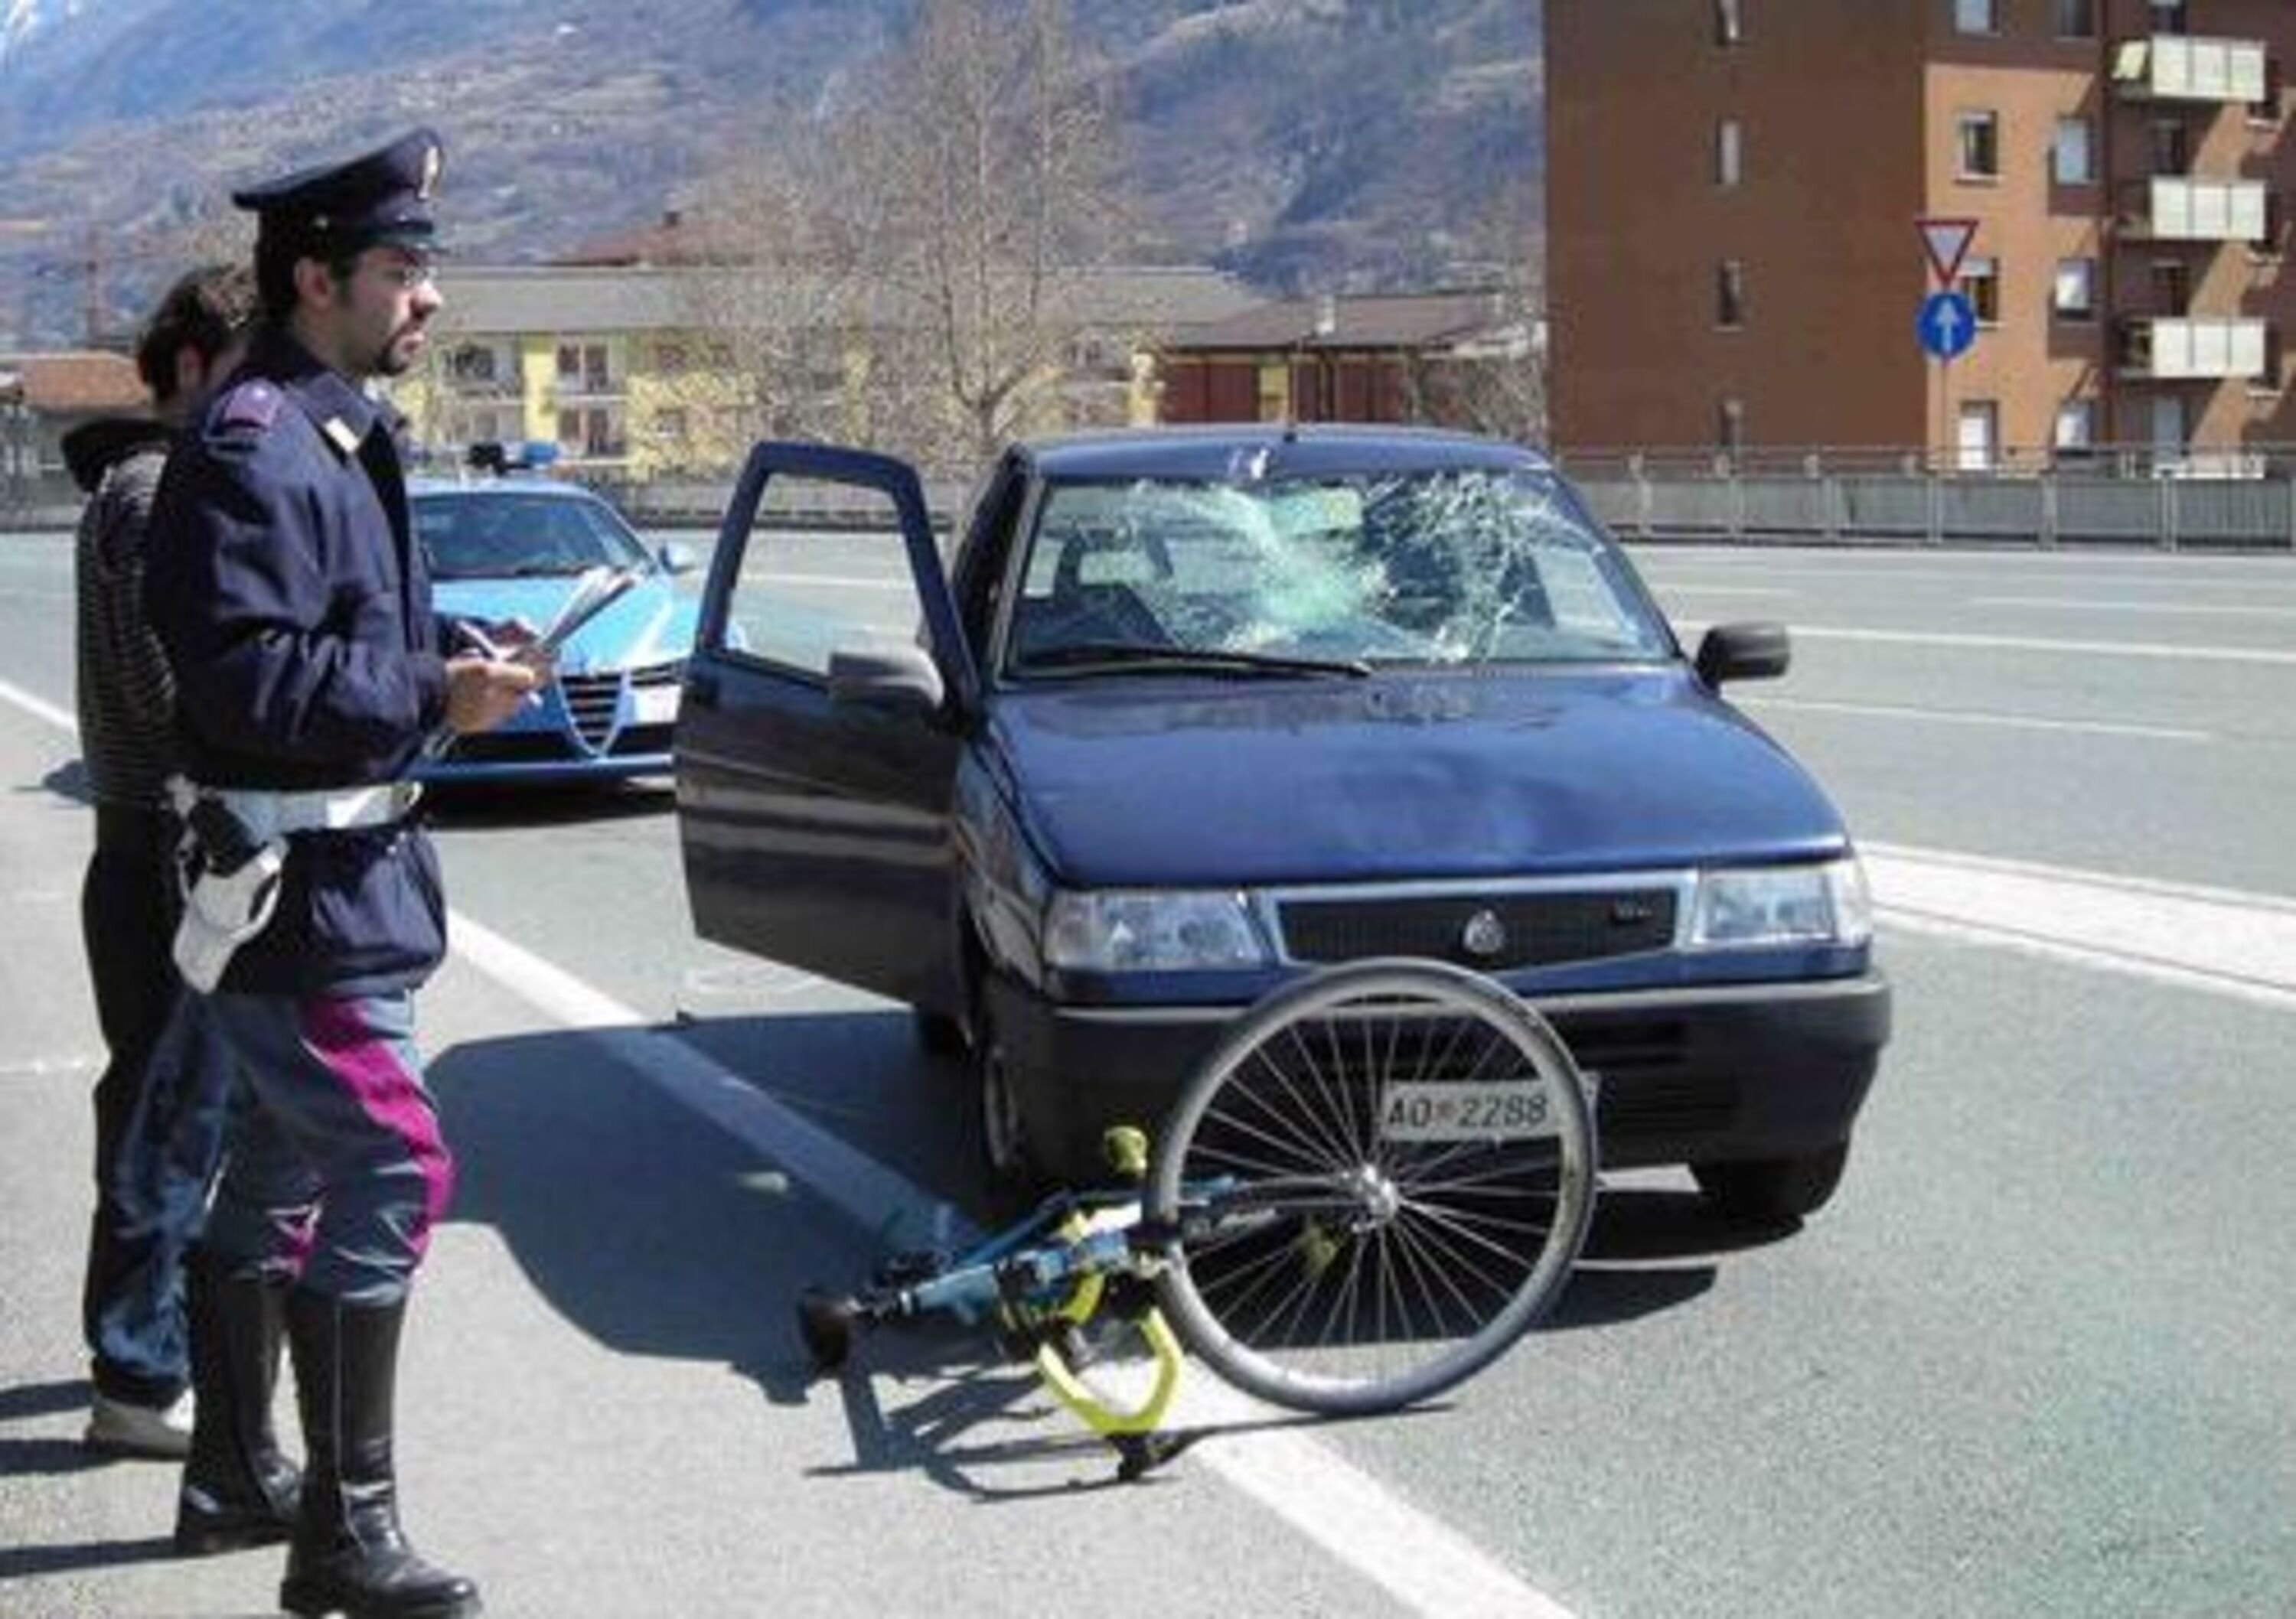 Incidenti stradali: il rapporto ACI-Istat sui dati 2011